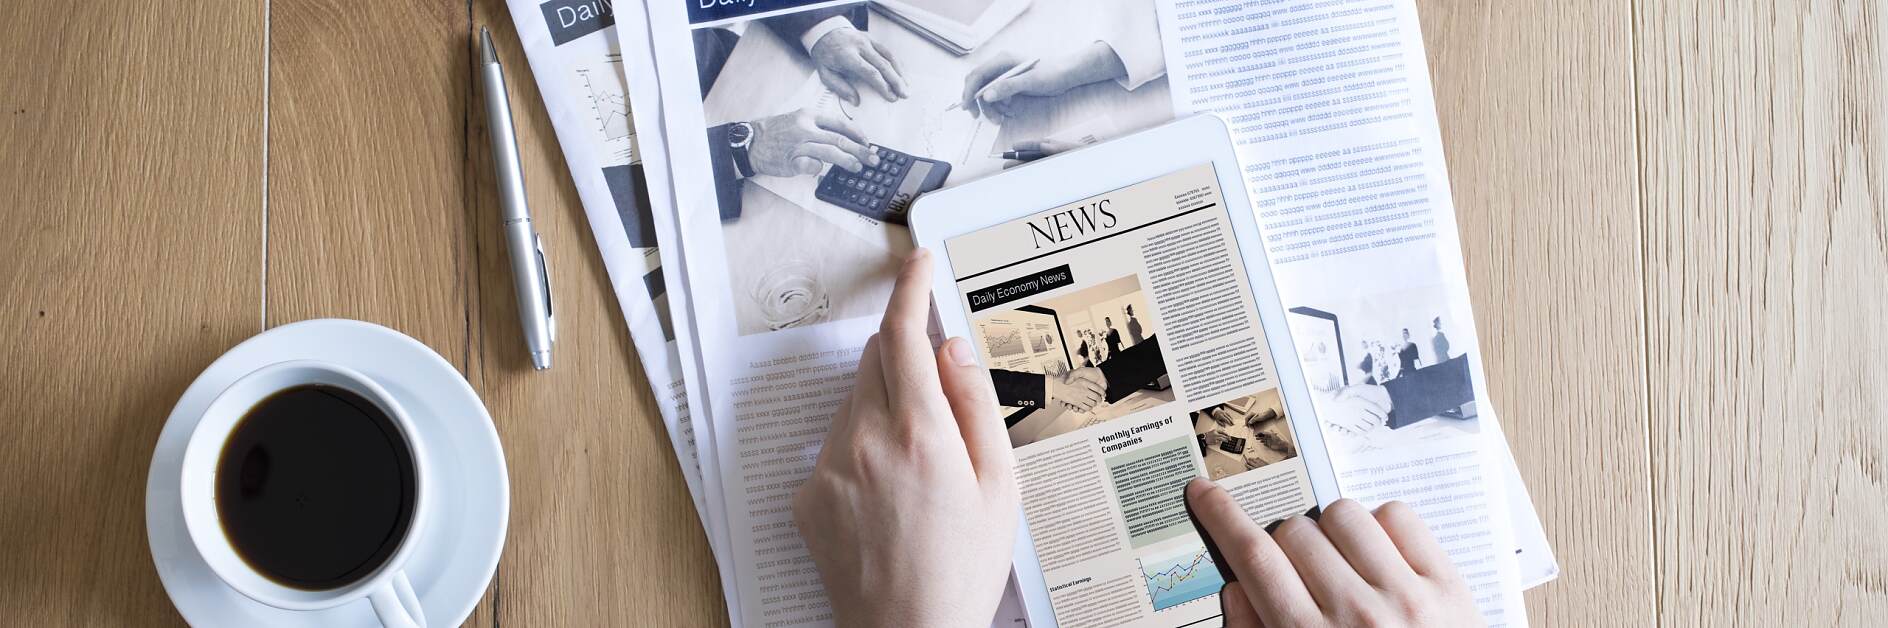 Kombinasi iPad Koran Kertas & Percetakan